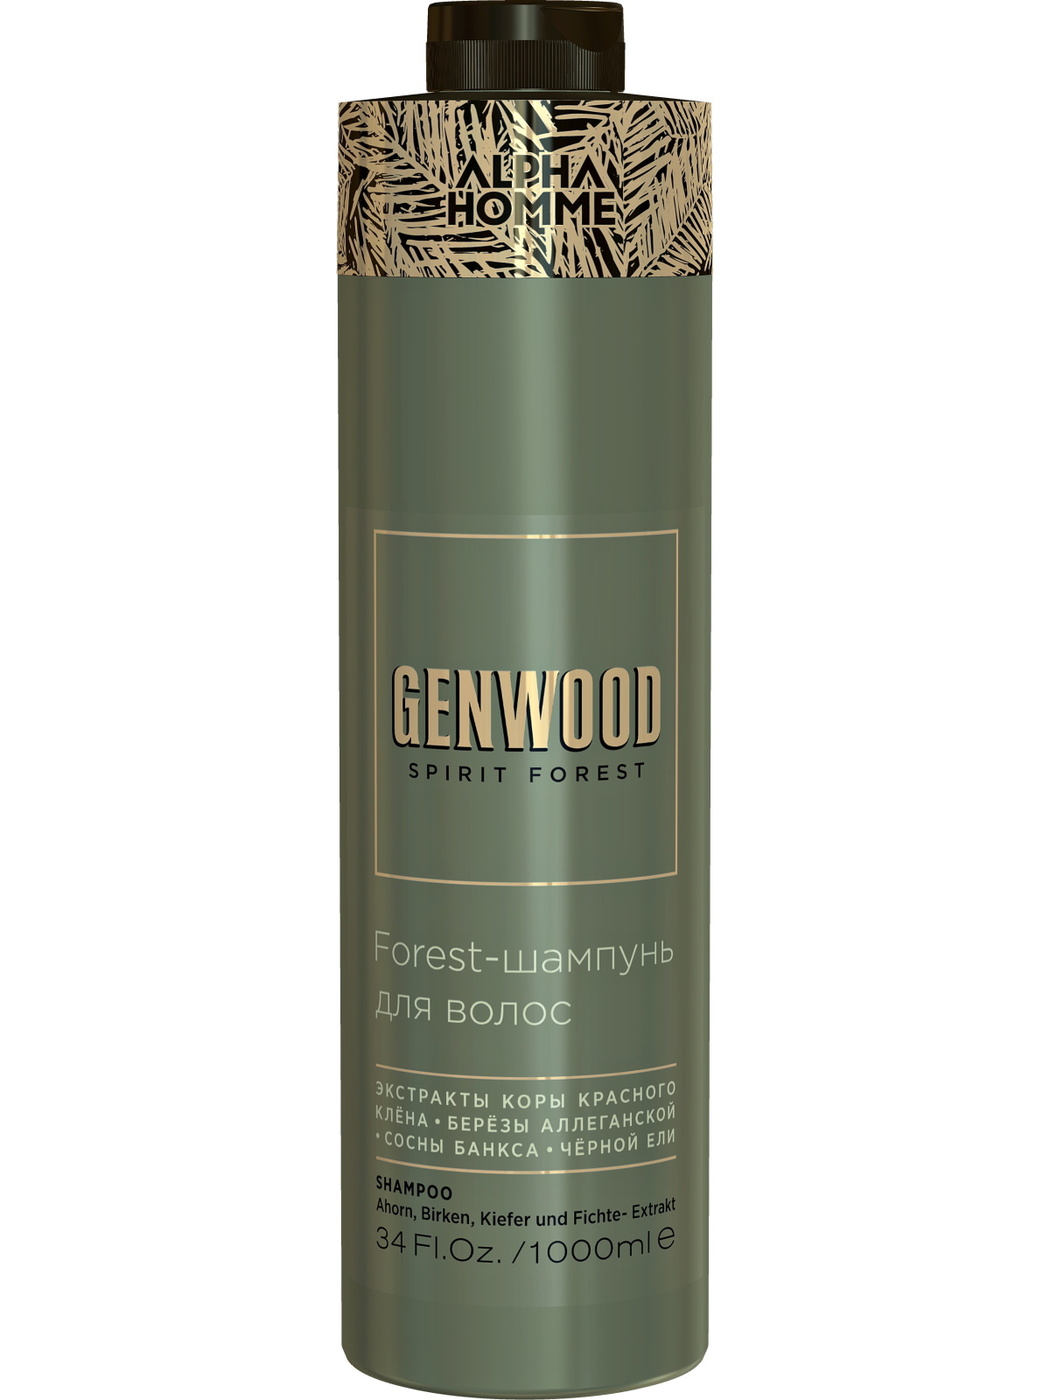 Estel alpha homme genwood forest шампунь для волос и тела 1000 мл.